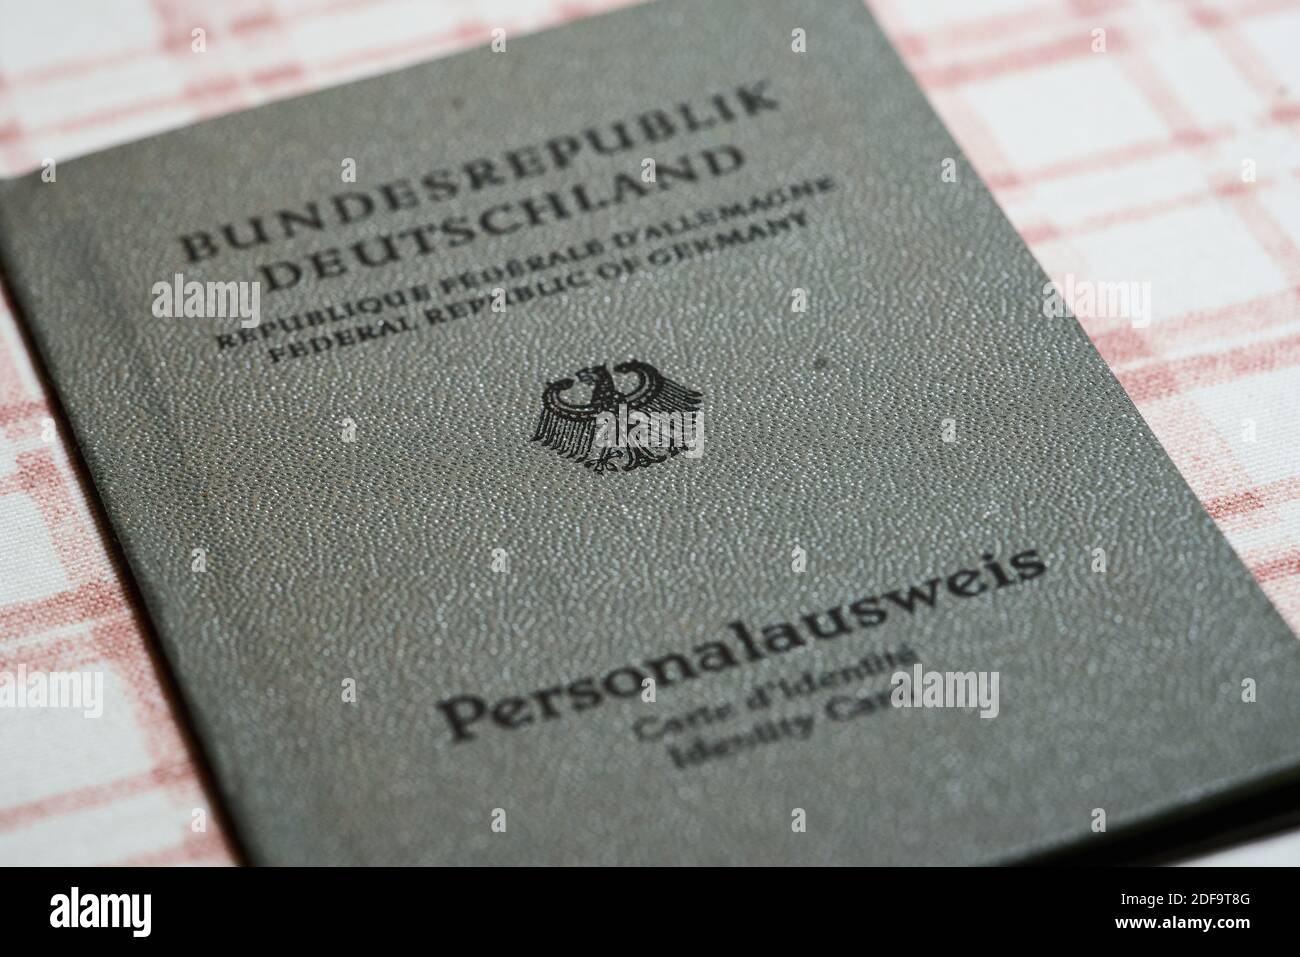 Foto storica: Carta d'identità della Repubblica federale di Germania intorno al 1960. Riproduzione a Marktoberdorf, Germania, 26 ottobre 2020. © Peter Schatz / Alamy foto d'archivio Foto Stock